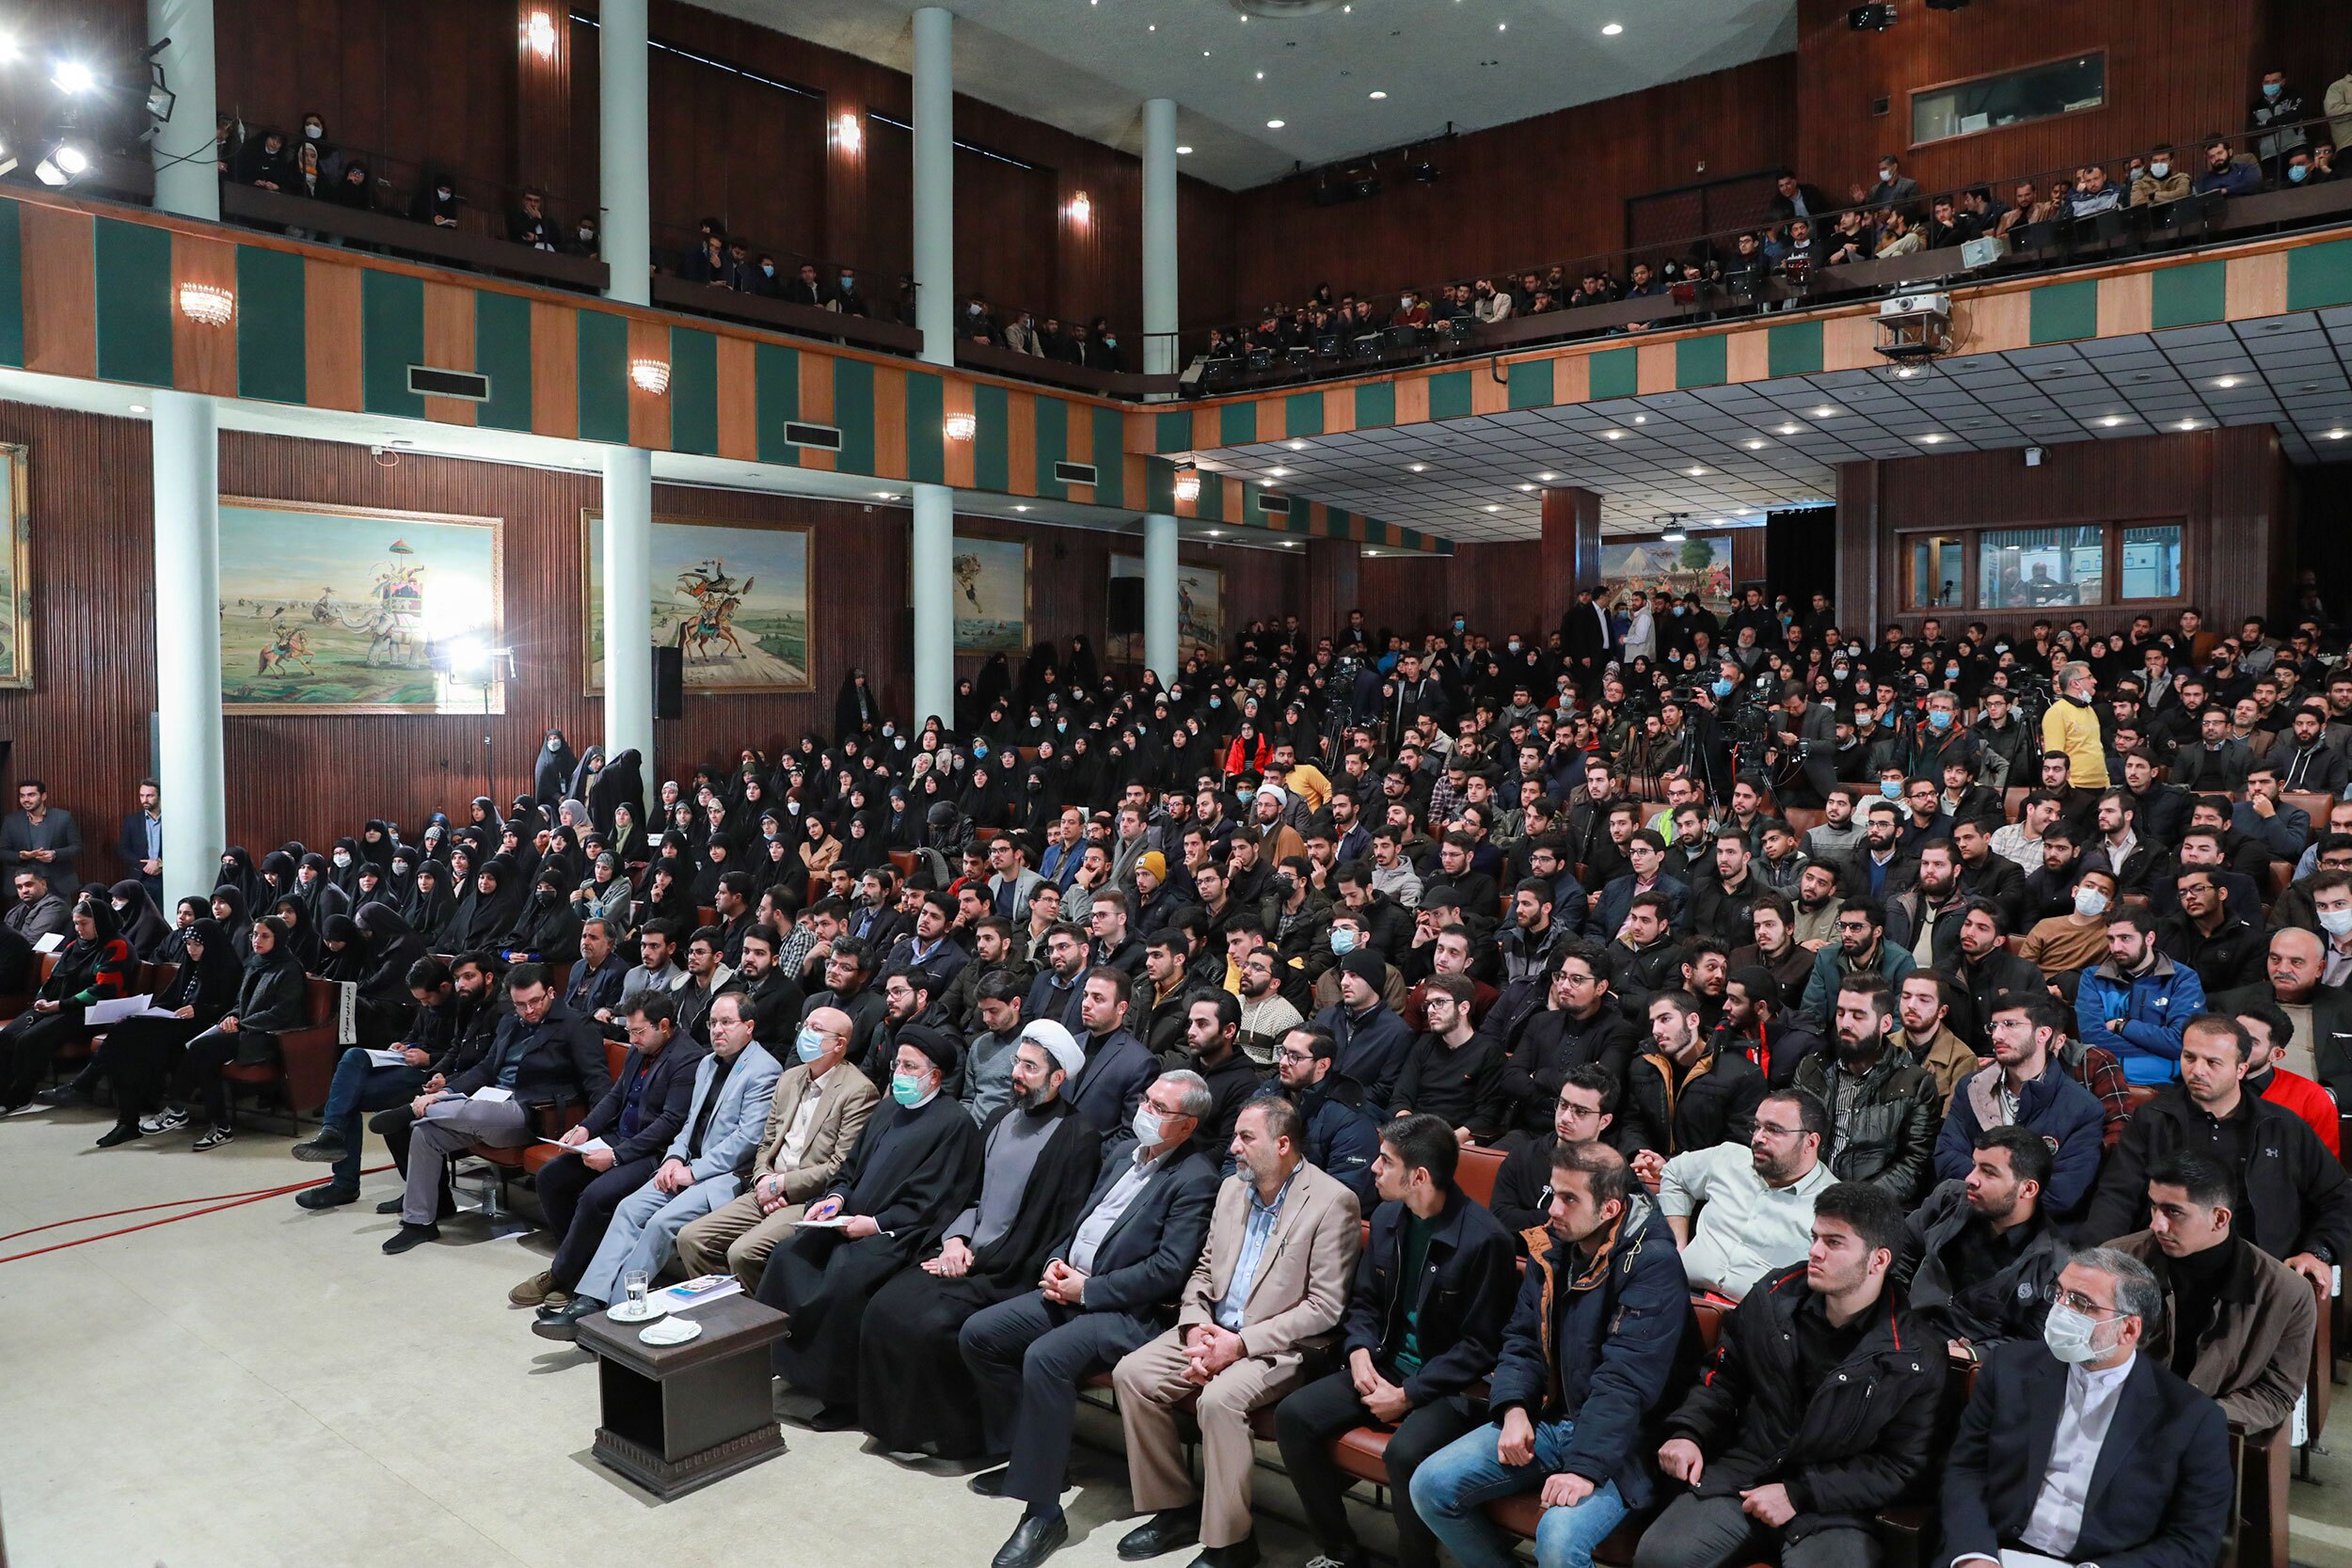 رئیس‌جمهور در دانشگاه تهران: به من گفتند امروز دانشگاه نروید| دنبال گشایشم نه تعطیلی دانشگاه| اعتراضات را باید شنید+ فیلم